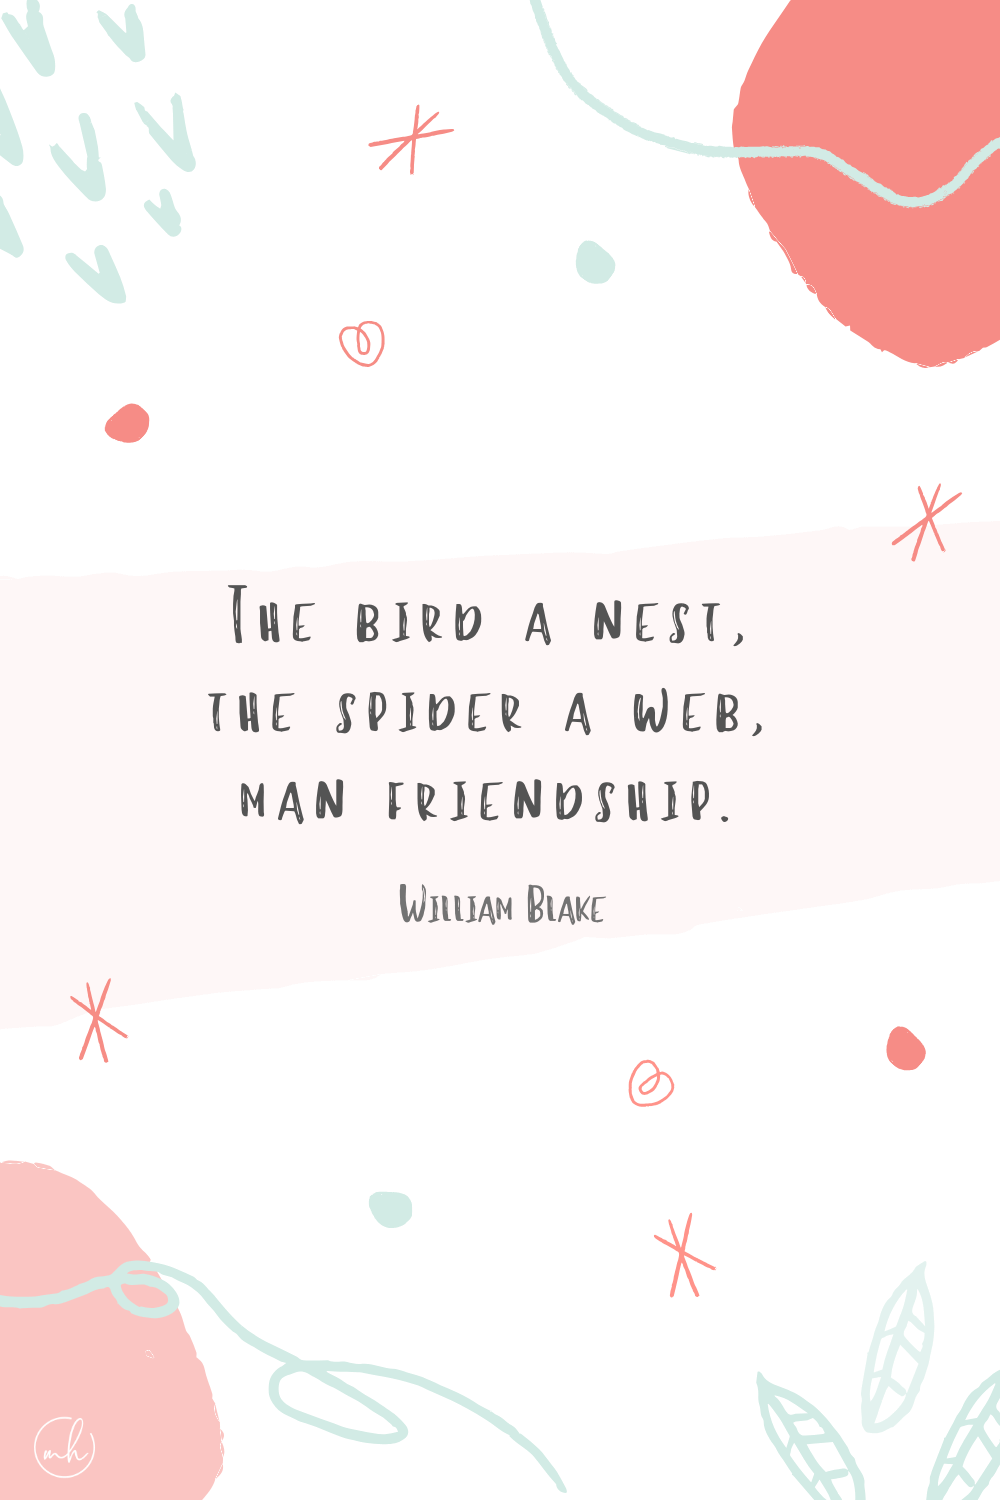 “The bird a nest, the spider a web, man friendship.” - William Blake